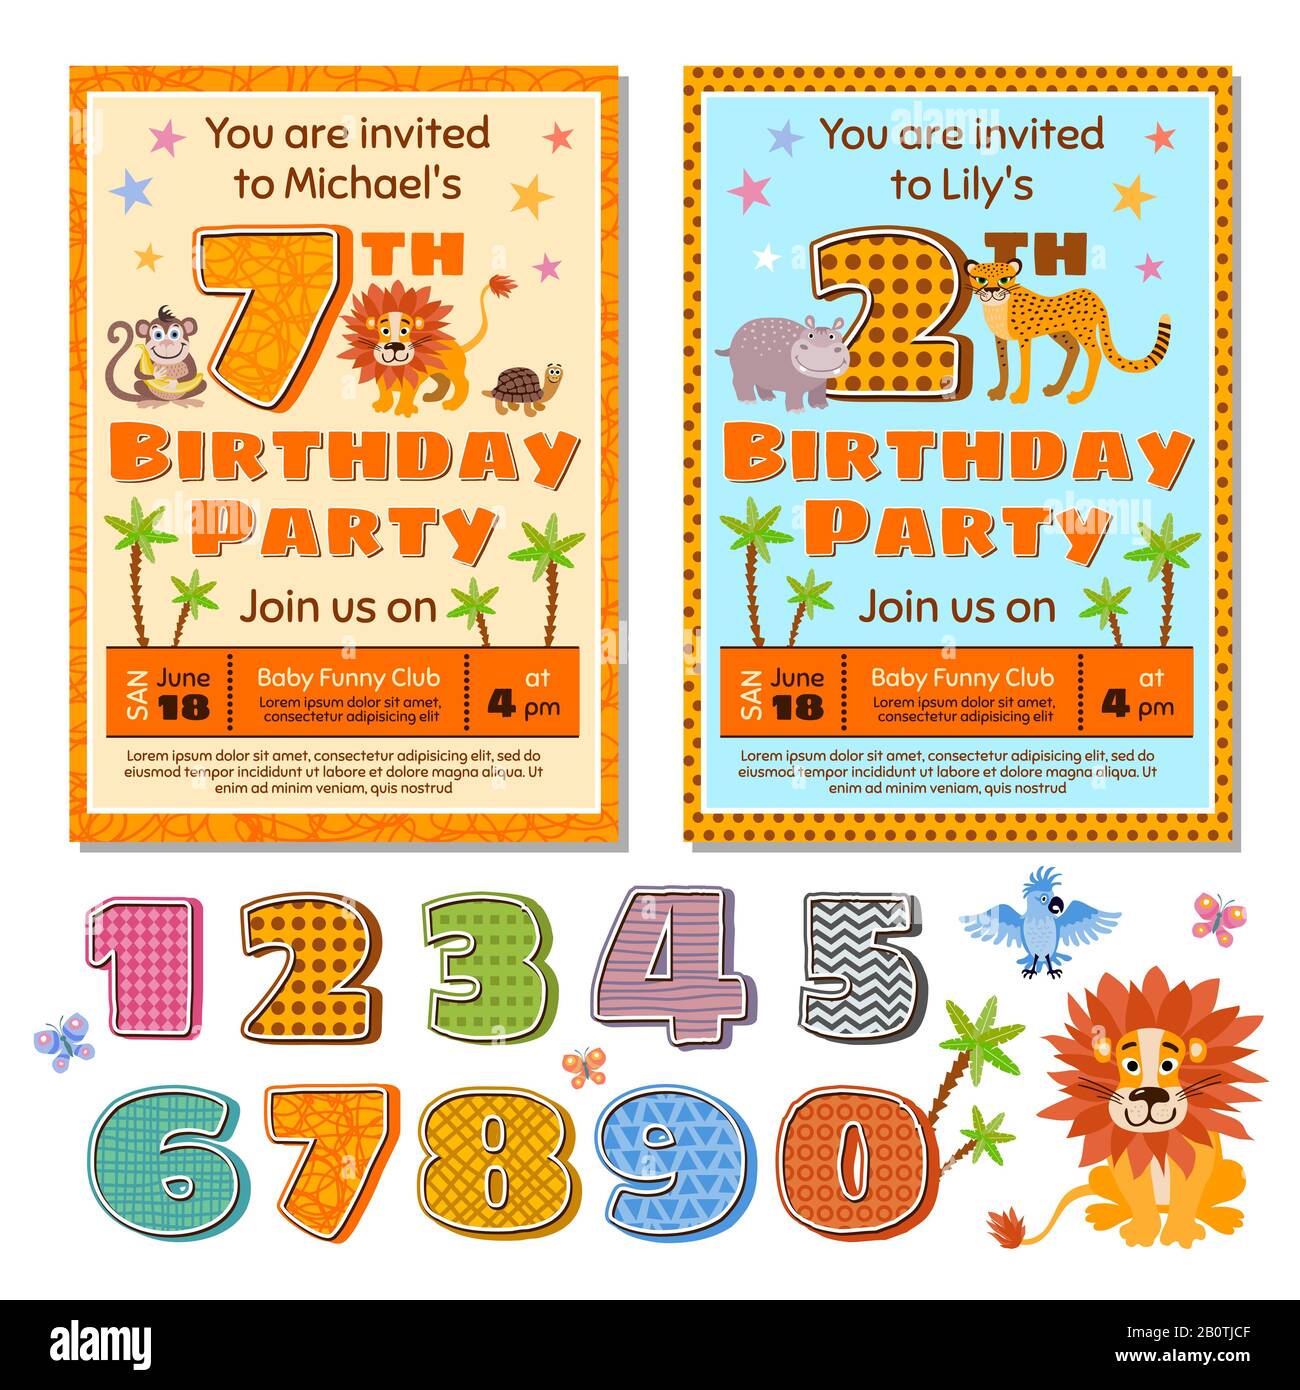 Kinder Geburtstag Party Einladung Karte Vektor Vorlage mit niedlichen Cartoon Tiere. Geburtstag Kinder Einladung Illustration Stock Vektor